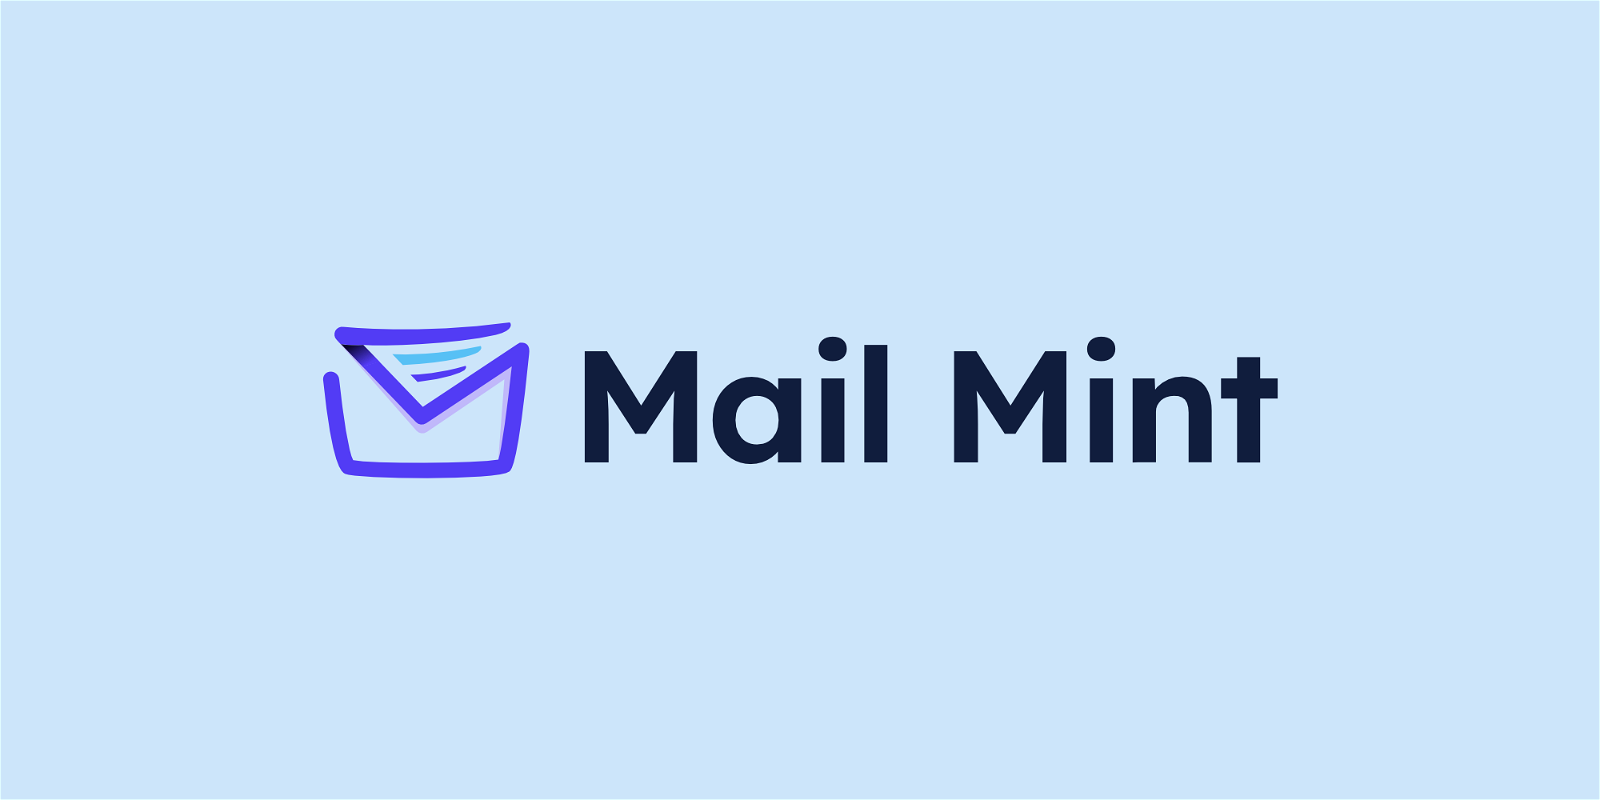 Mail Mint